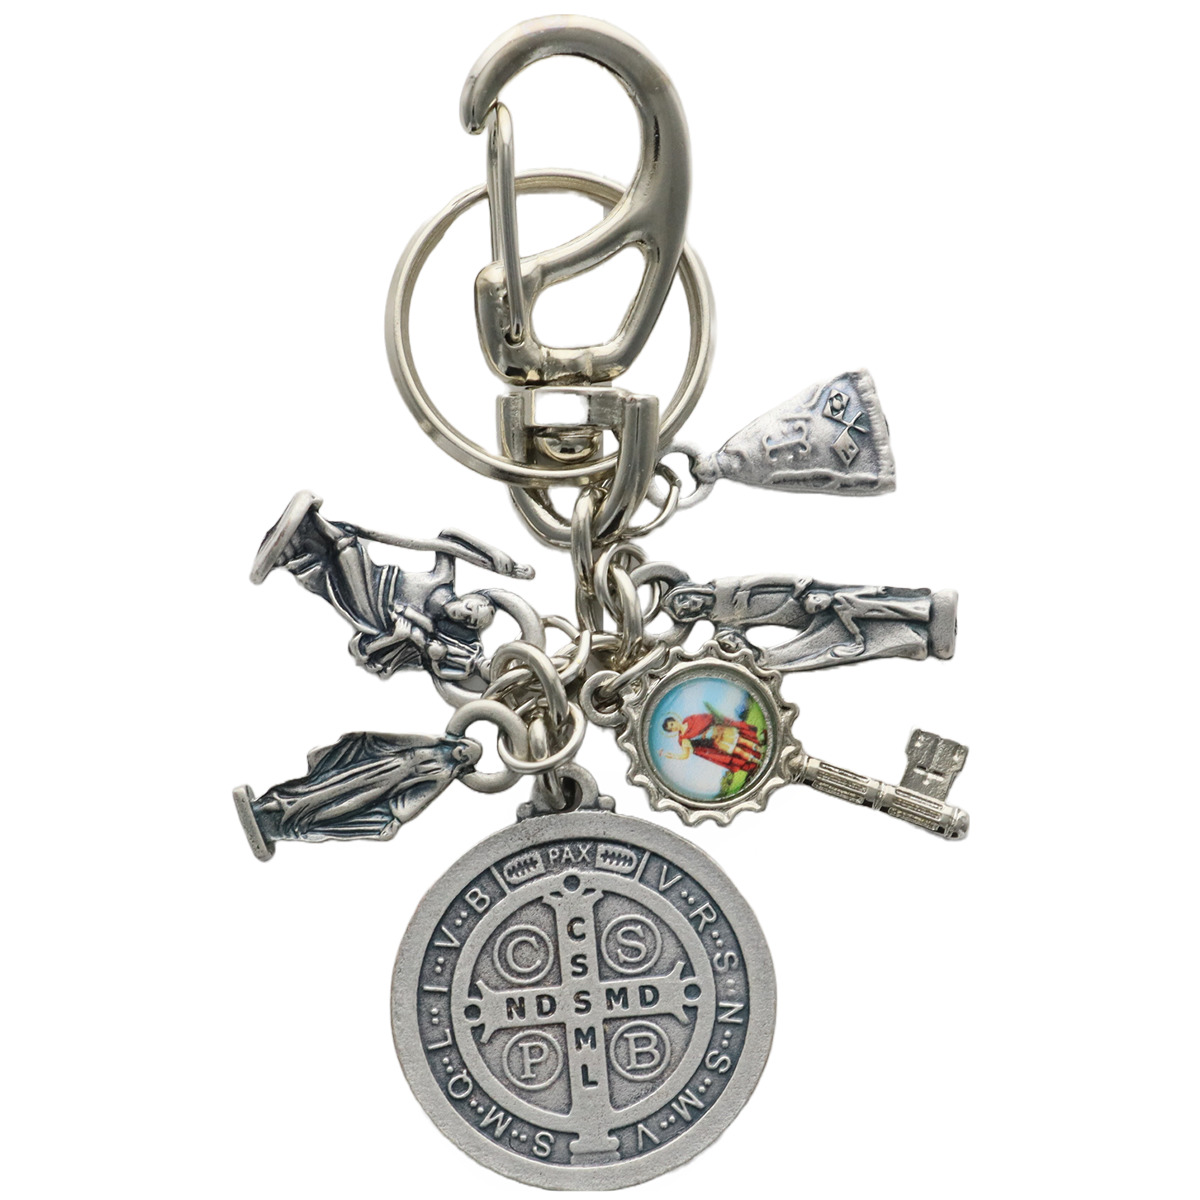 Porte-clés mousqueton en métal avec médaille saint Benoît et breloques (sainte famille, vierge miraculeuse, saint Christophe, saint Expedit, ...)